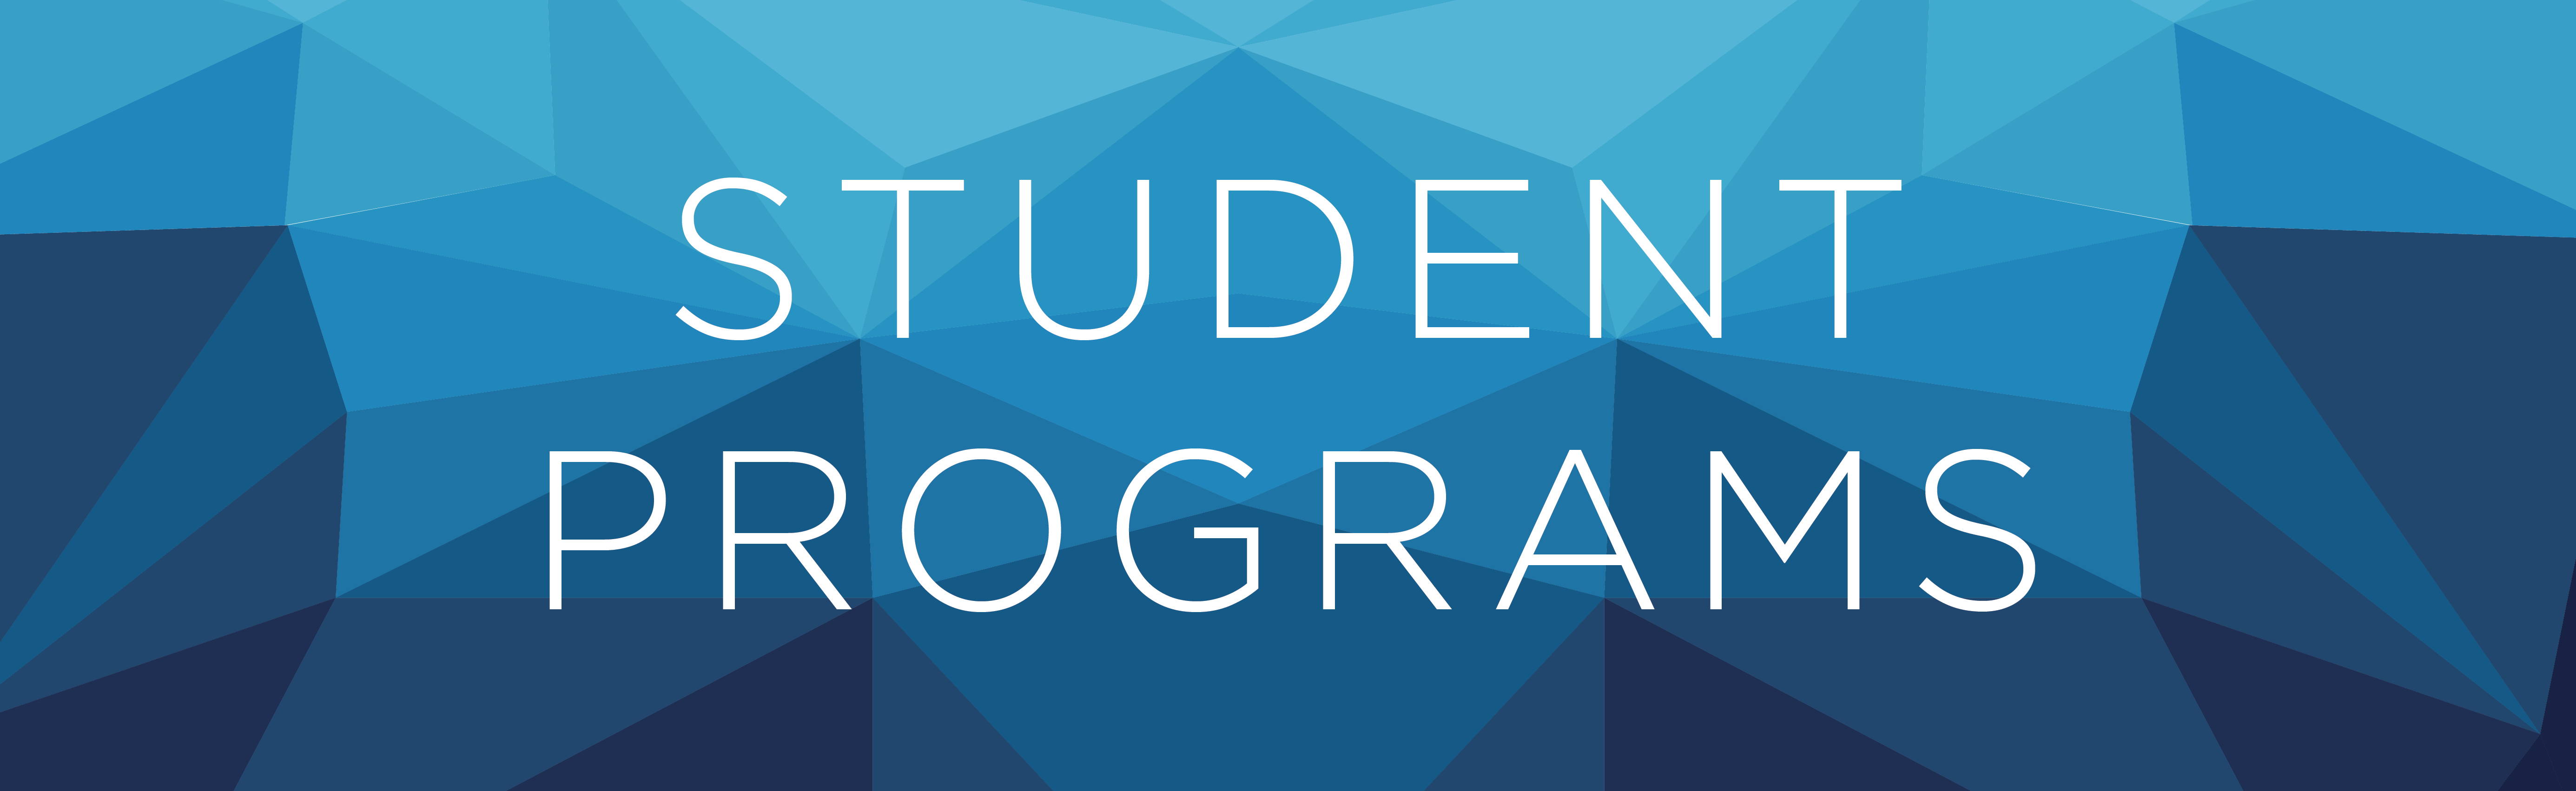 Student Programs Banner